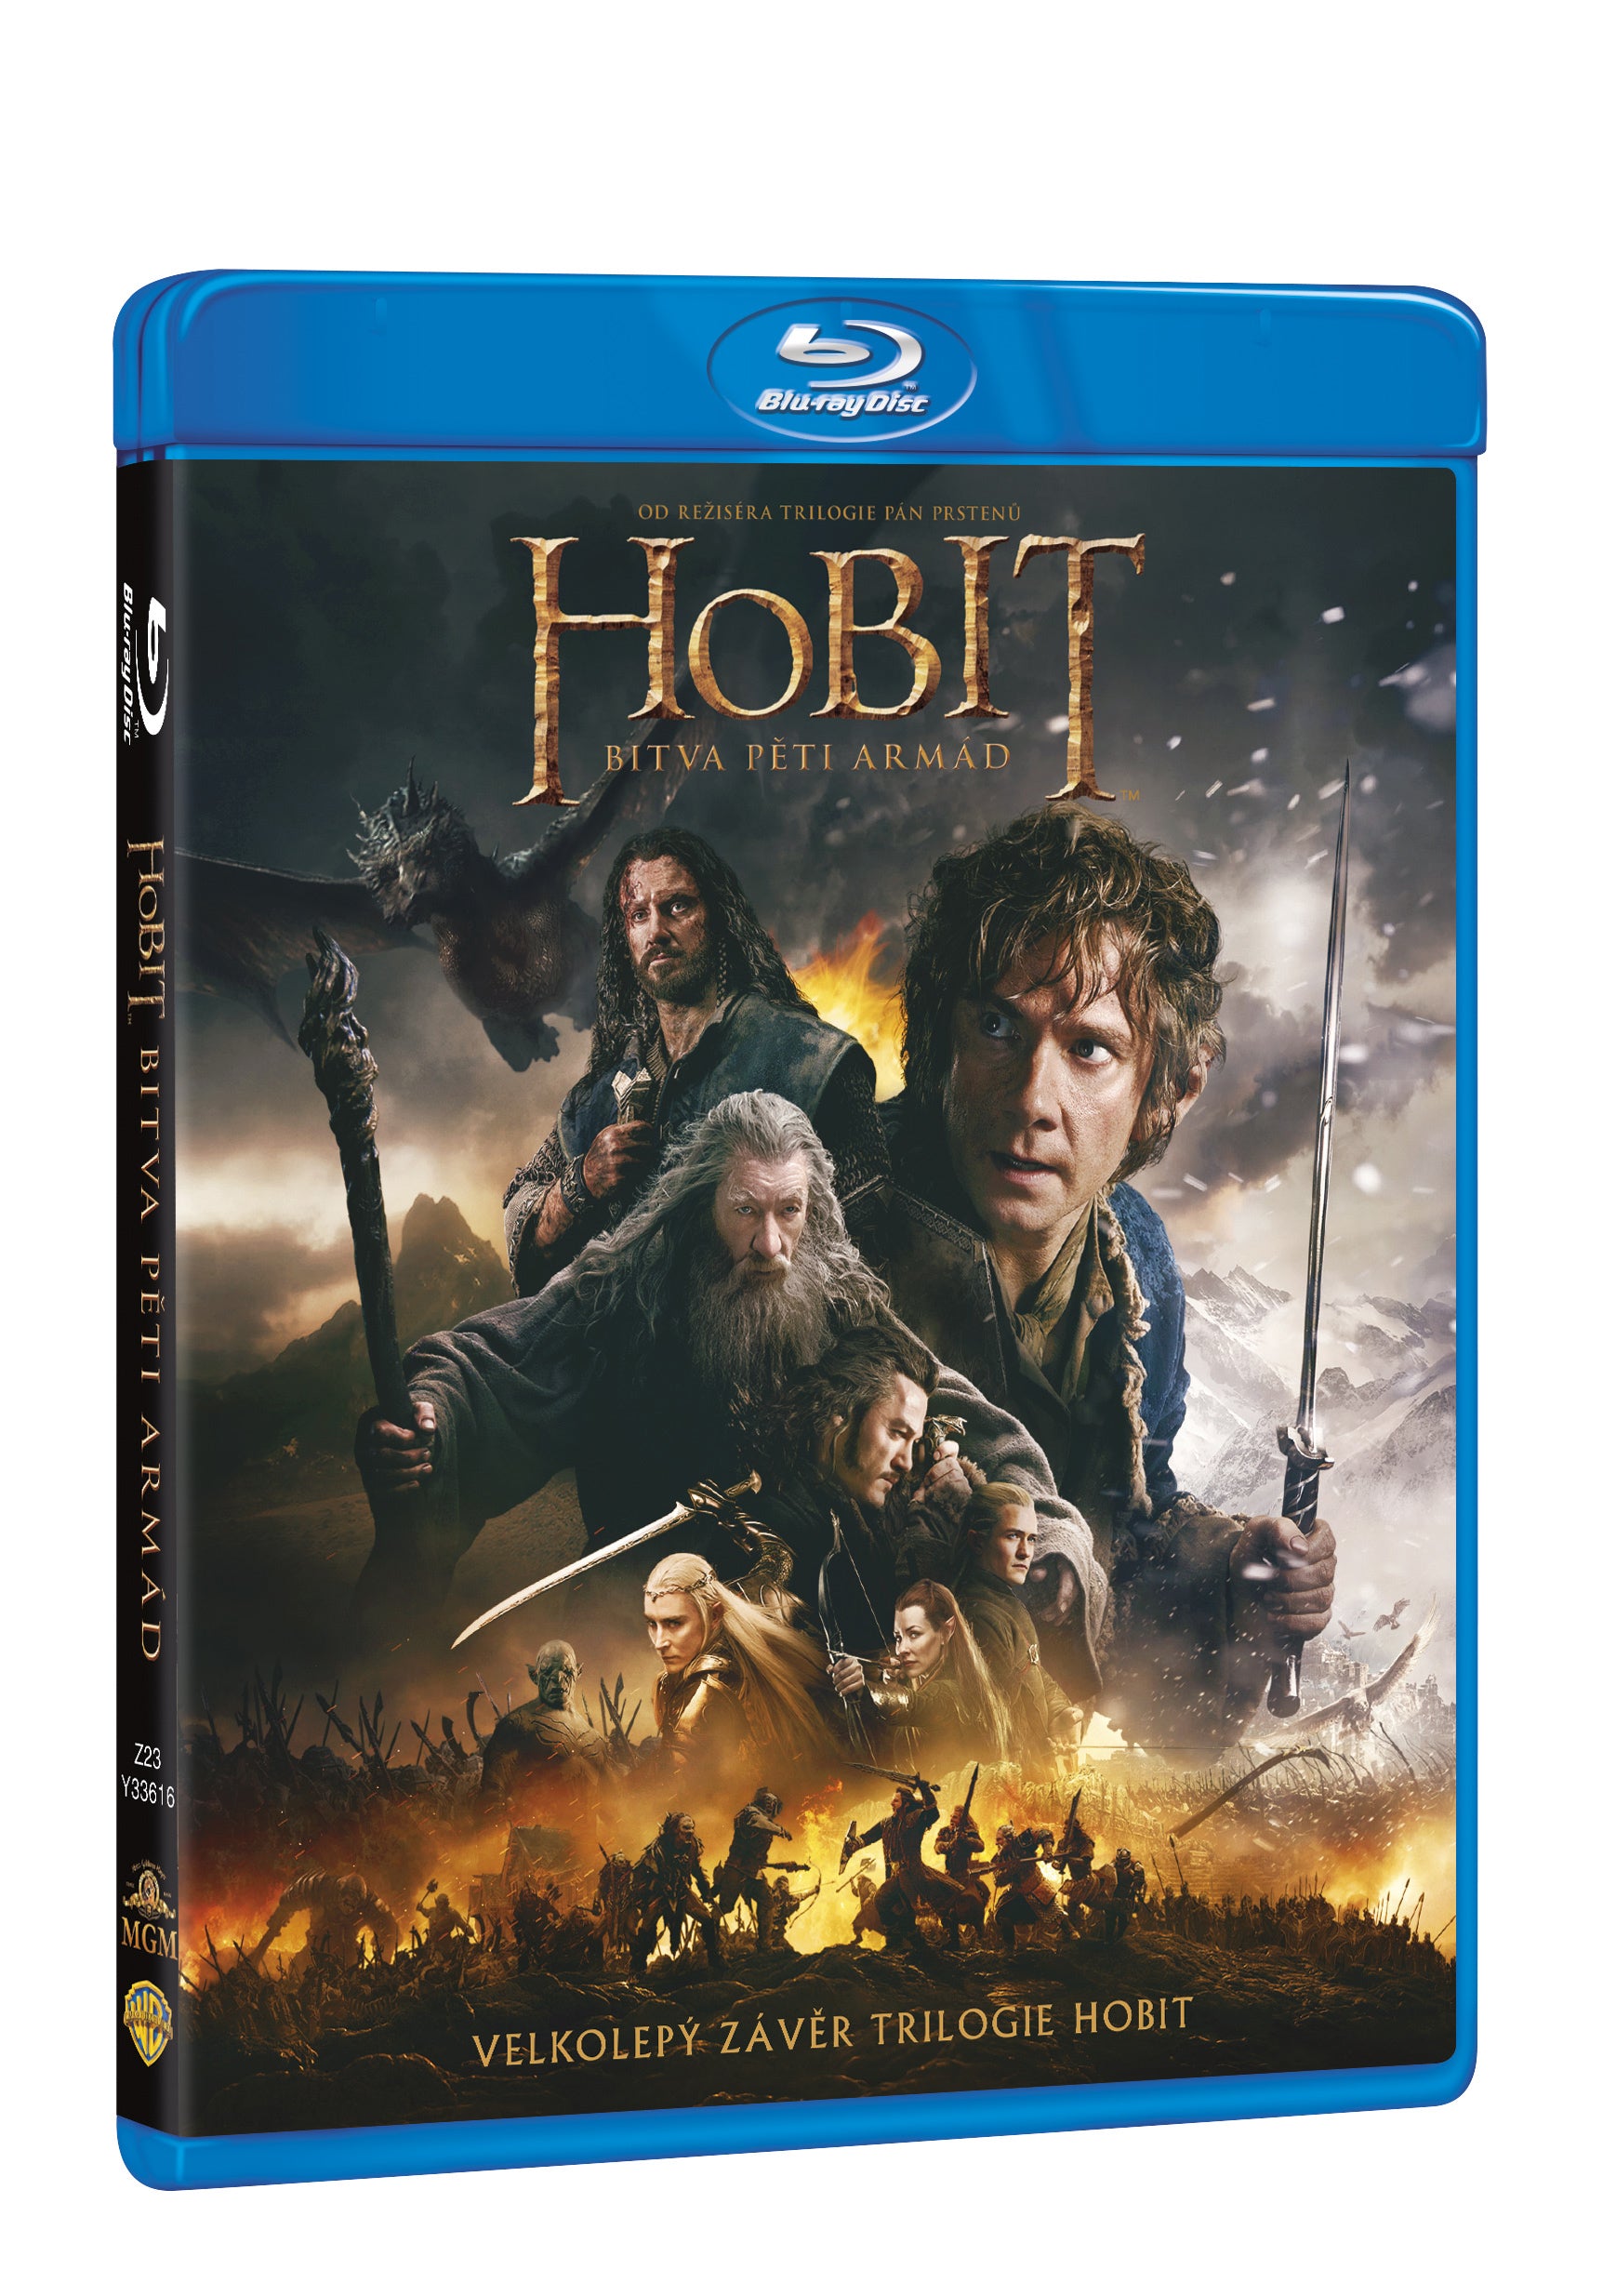 Hobit: Bitva peti armad 2BD / The Hobbit: The Battle of the Five Armies - Czech version